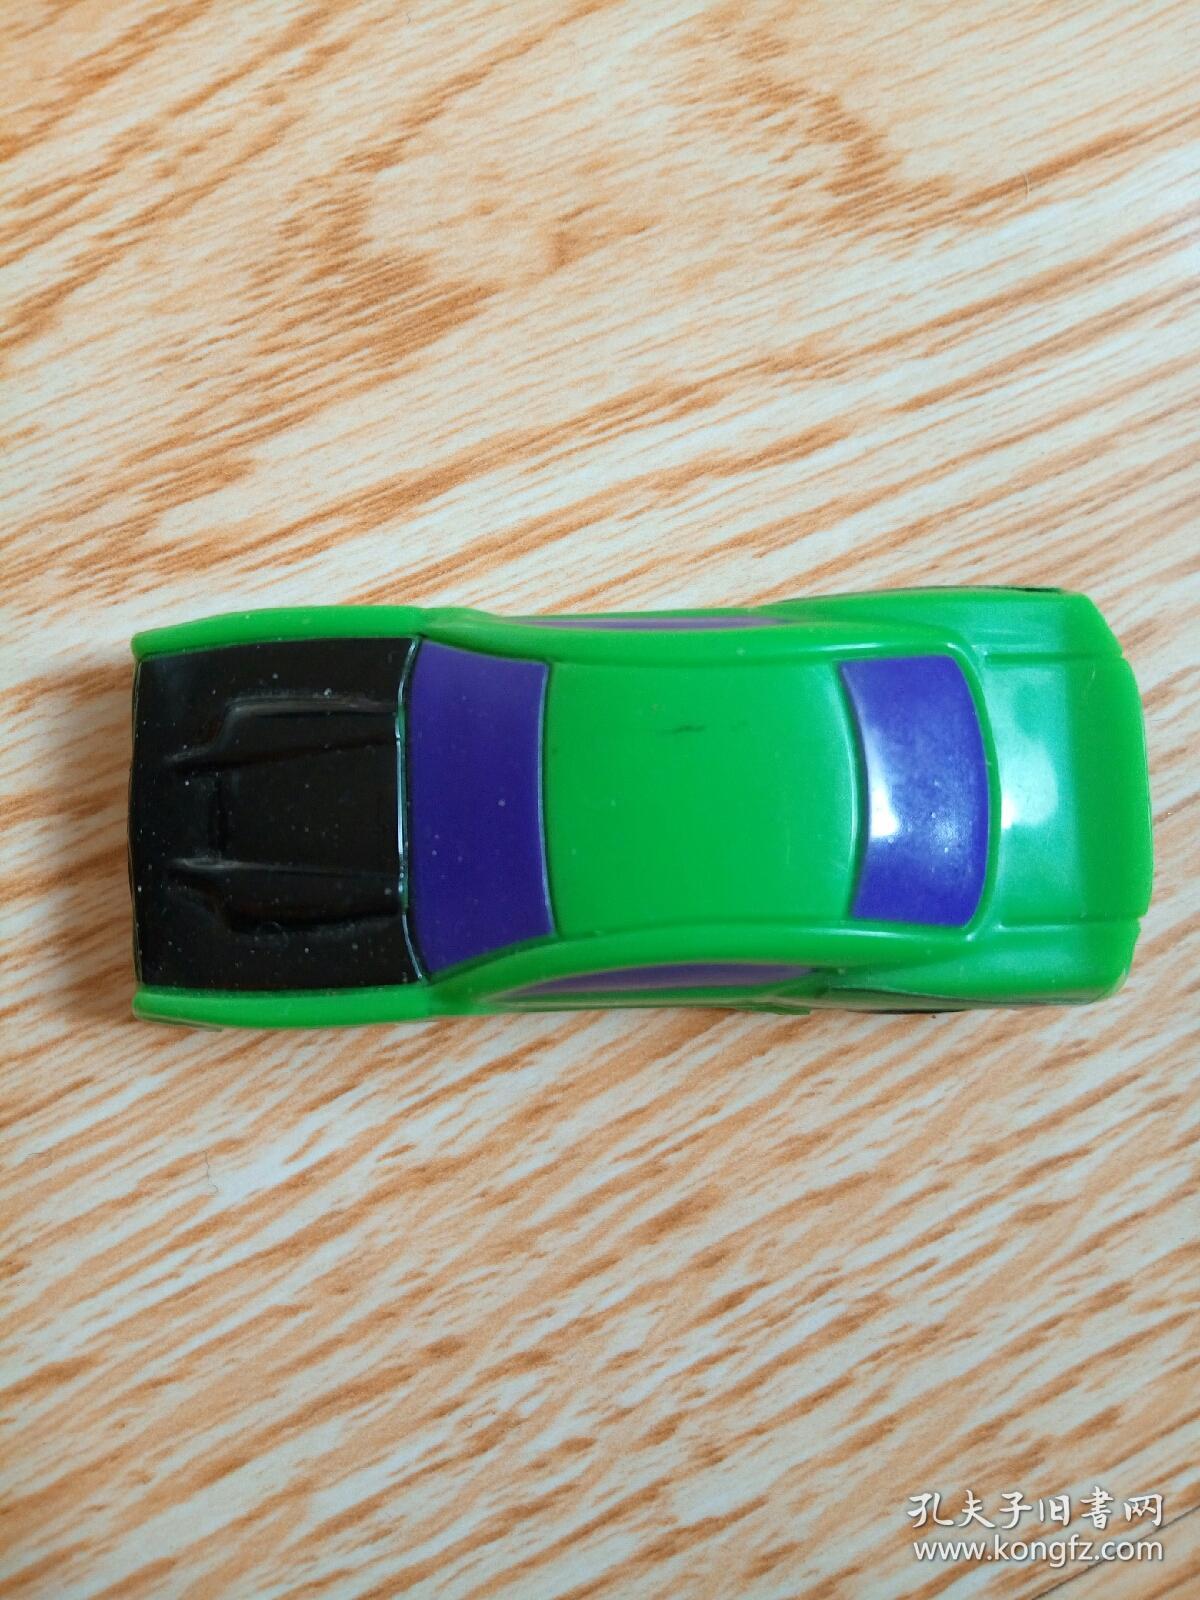 肯德基汽车玩具2011图片